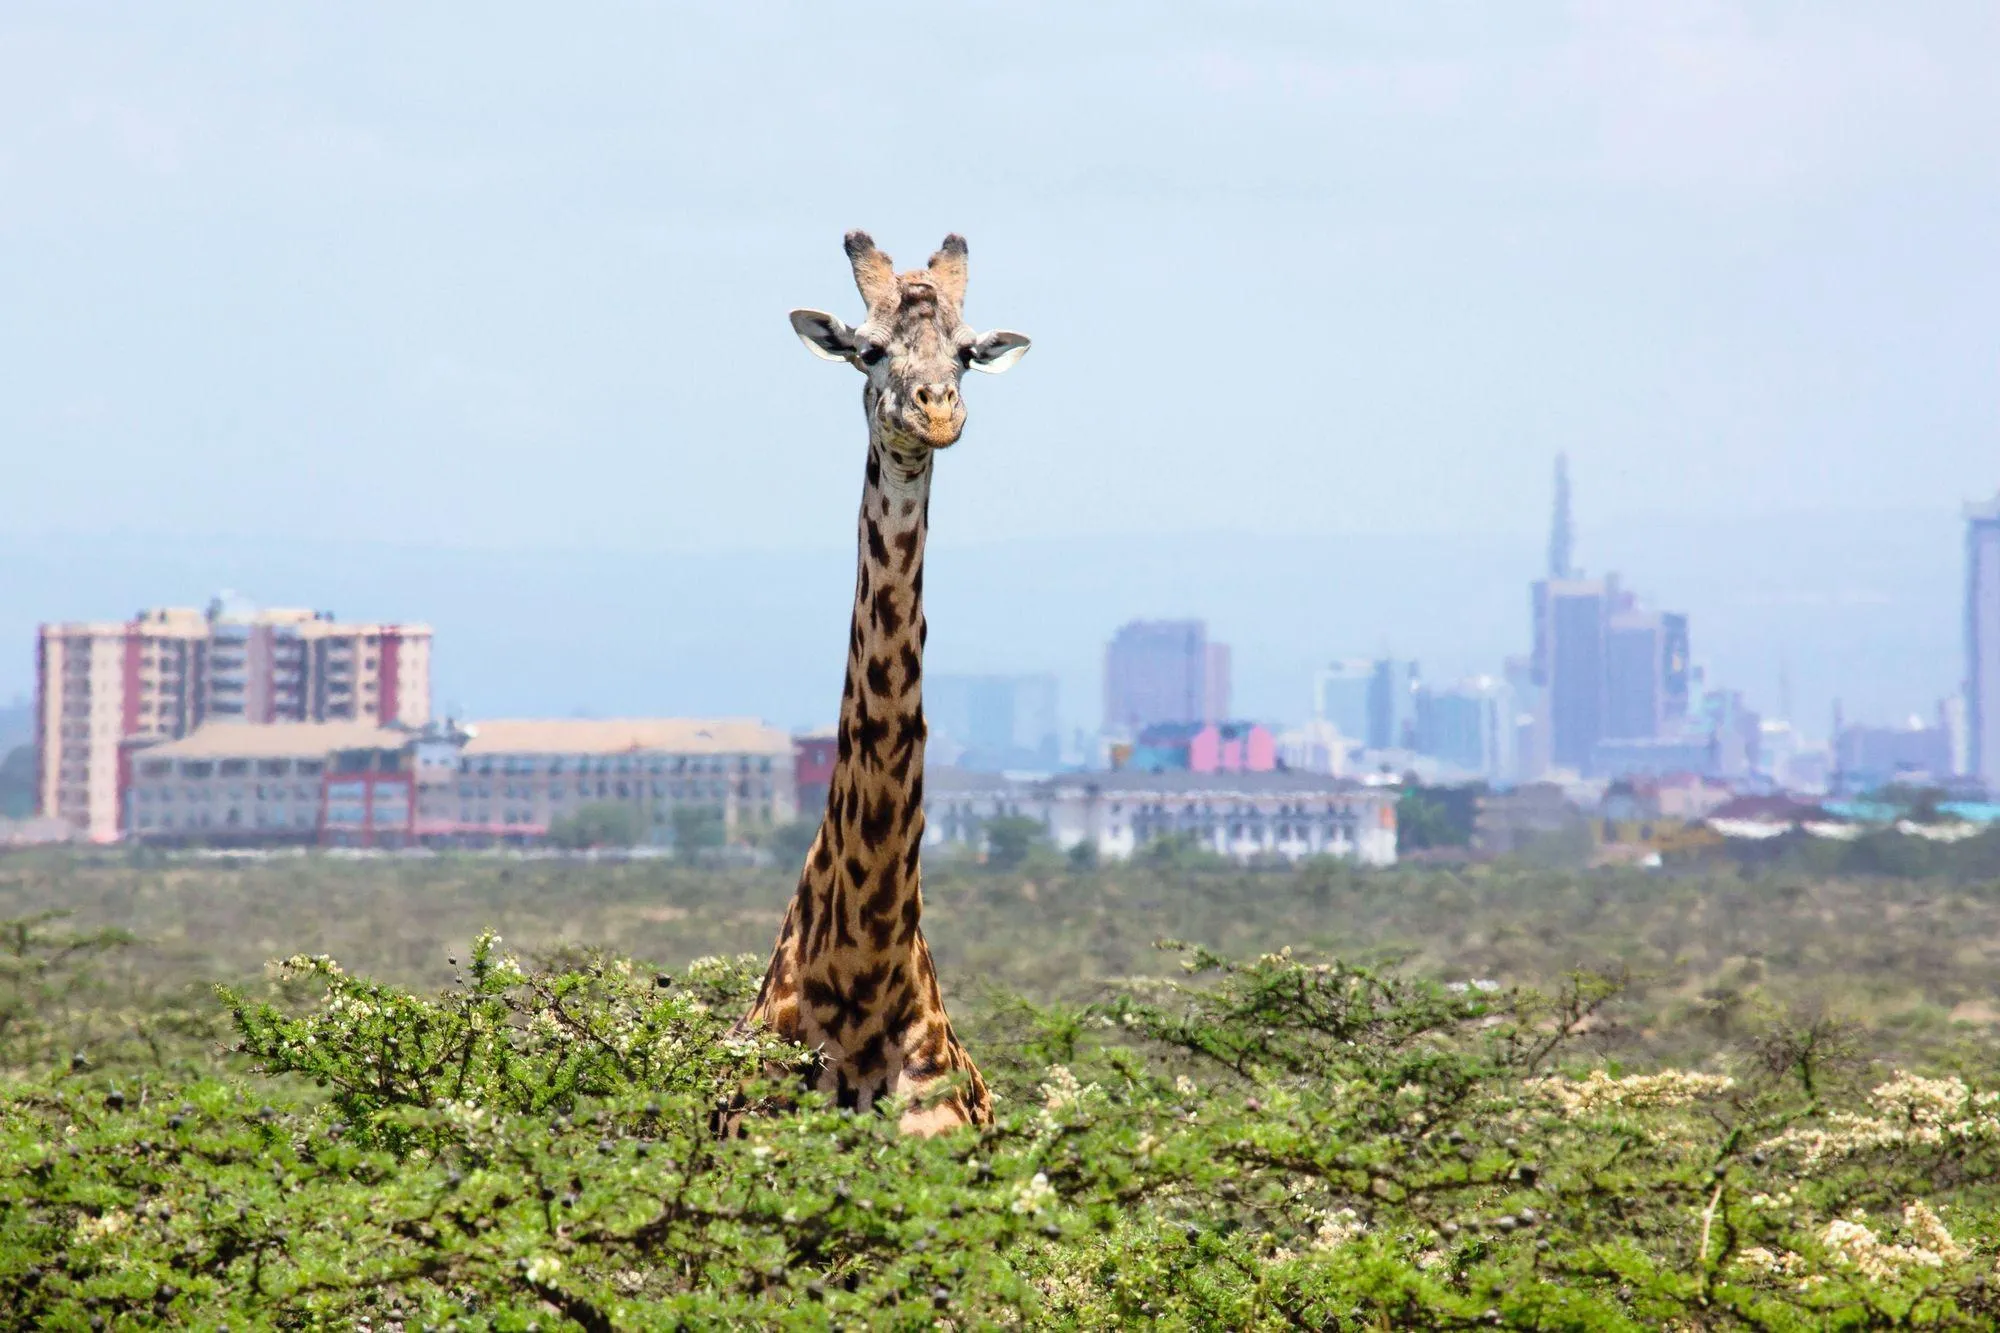 Le parc naturel de Nairobi menacé par l'urbanisation